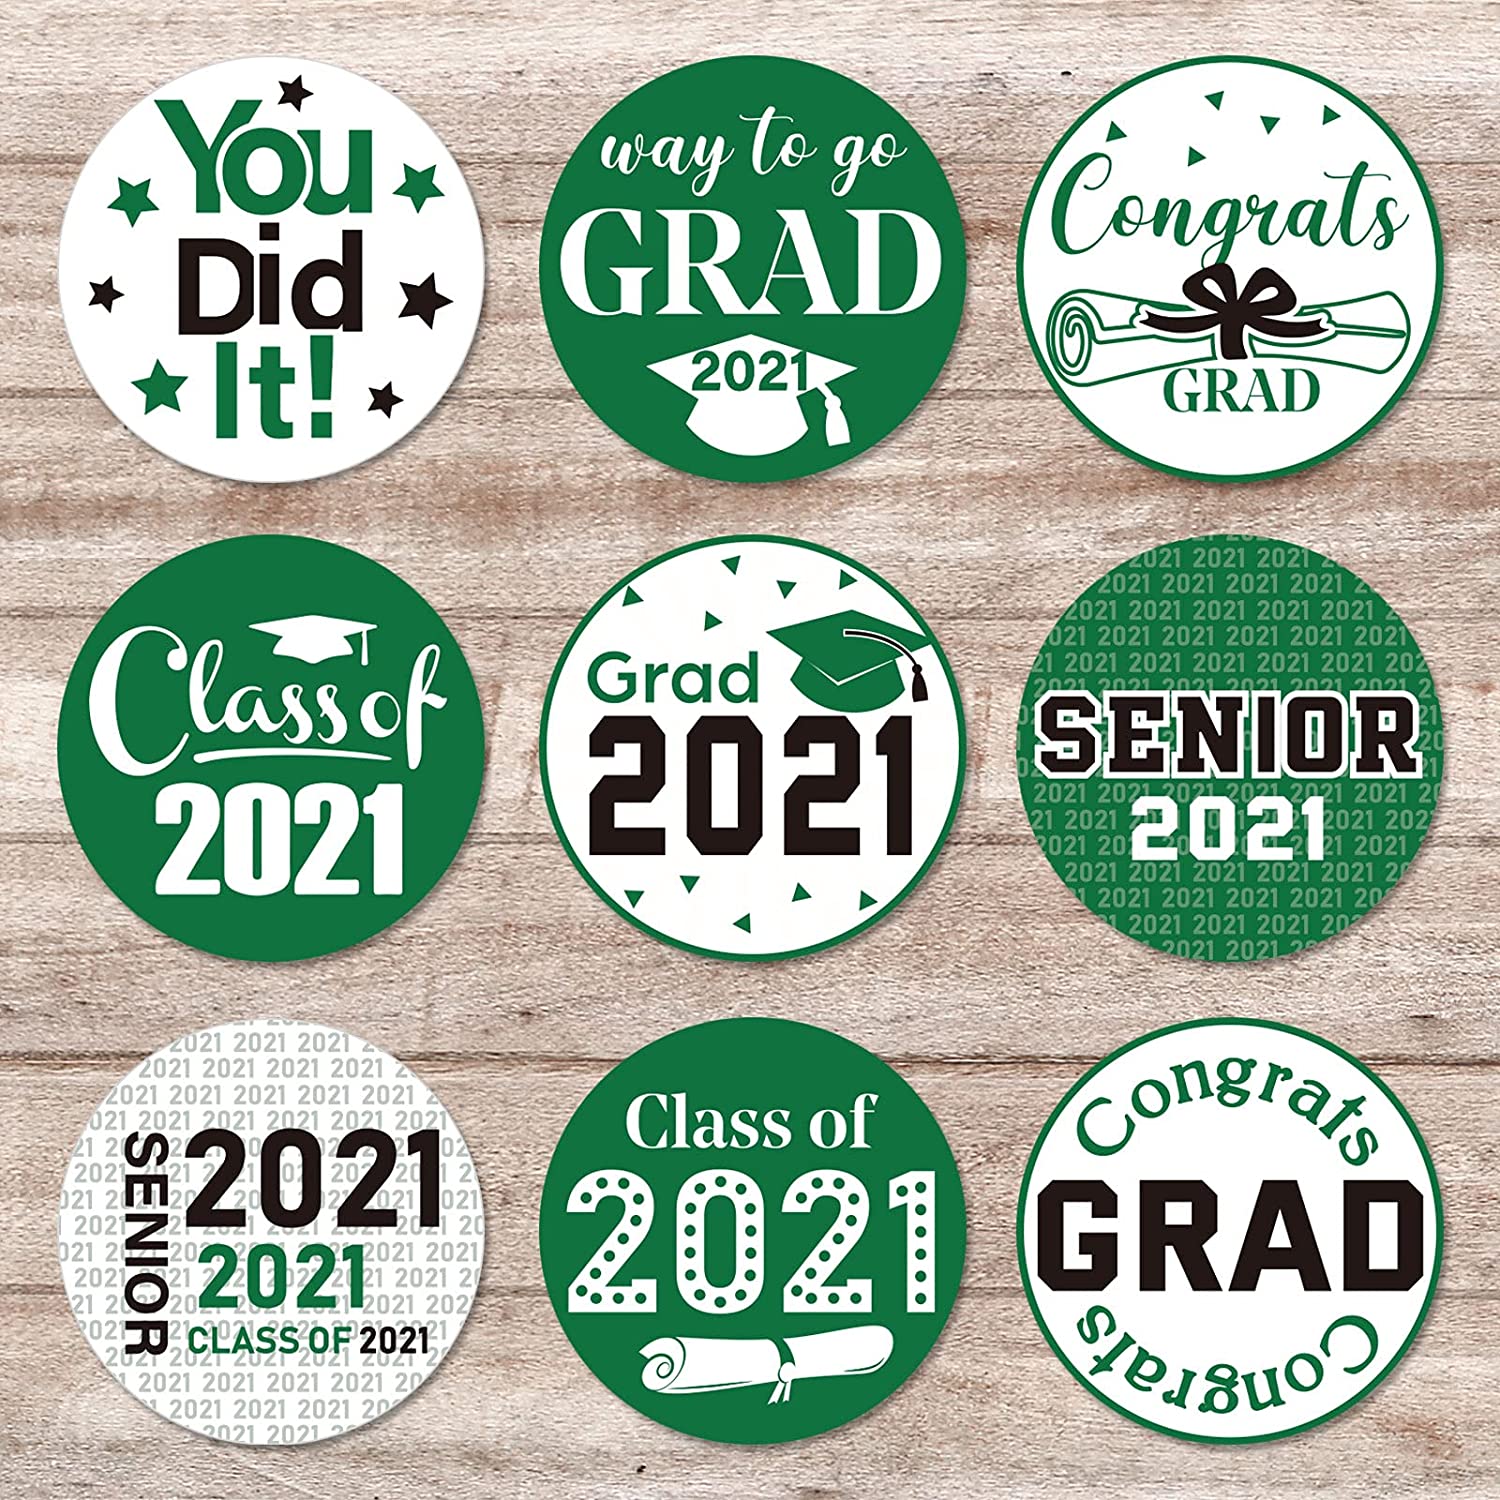 Details about   Class of 2021 Graduation Decorations Kit 